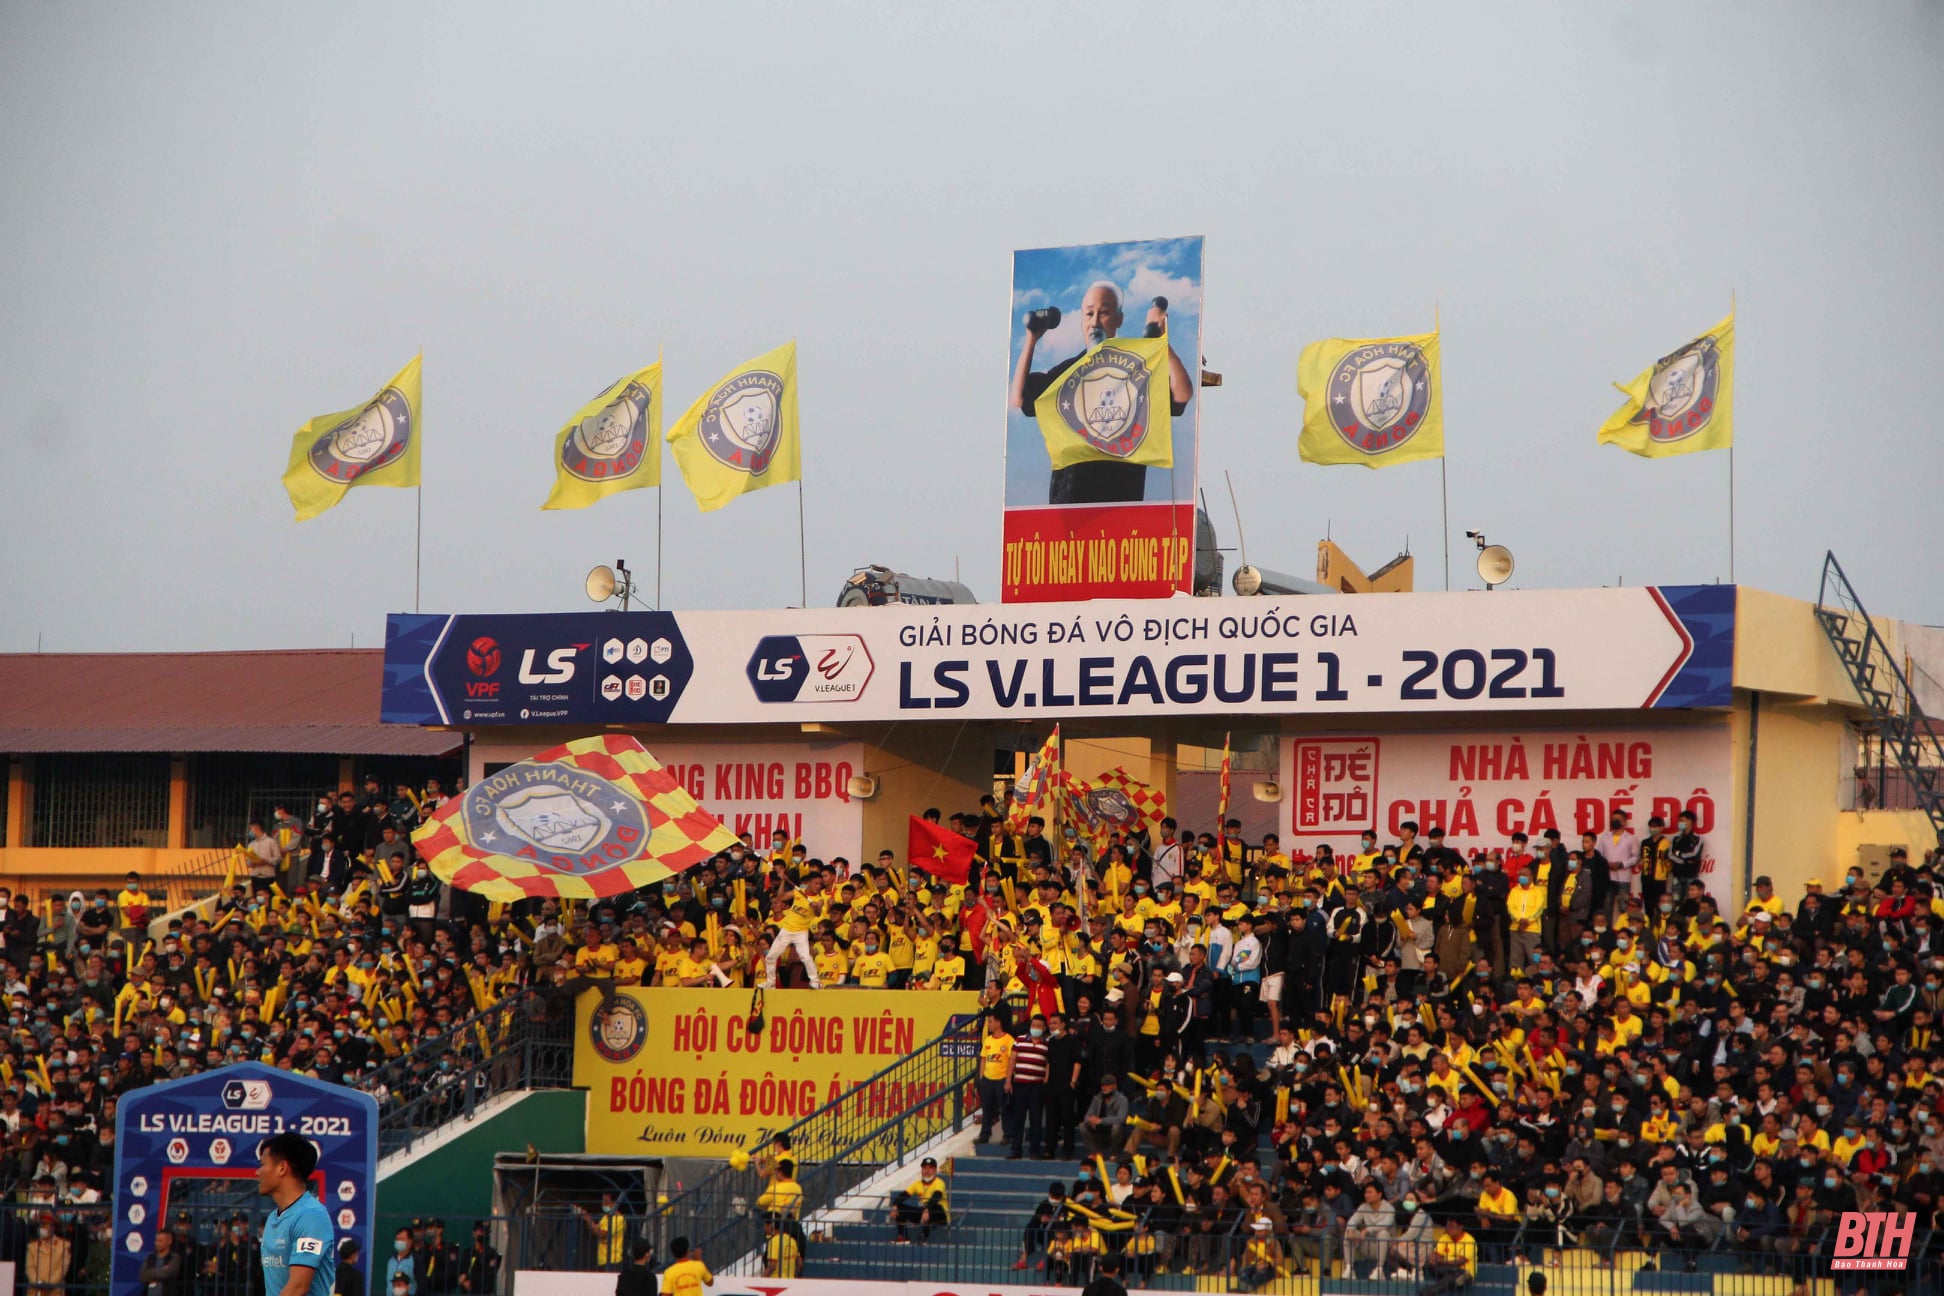 Tiếp tục miễn phí vào sân trận Đông Á Thanh Hóa – Nam Định ở vòng 3 LS V.League 2021